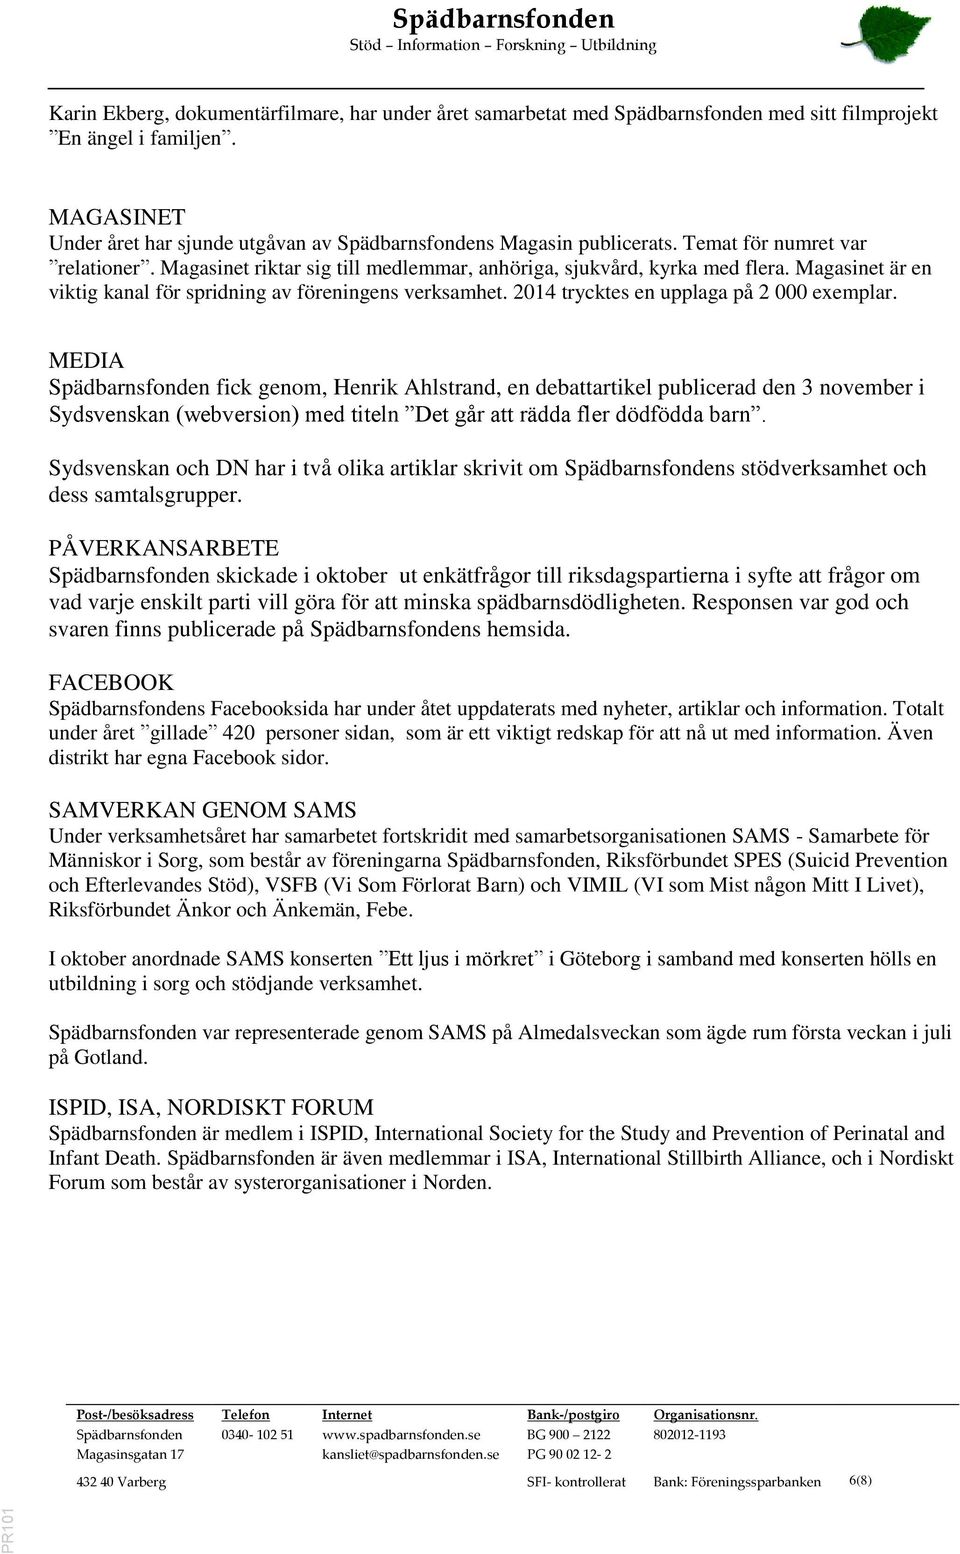 2014 trycktes en upplaga på 2 000 exemplar. MEDIA fick genom, Henrik Ahlstrand, en debattartikel publicerad den 3 november i Sydsvenskan (webversion) med titeln Det går att rädda fler dödfödda barn.